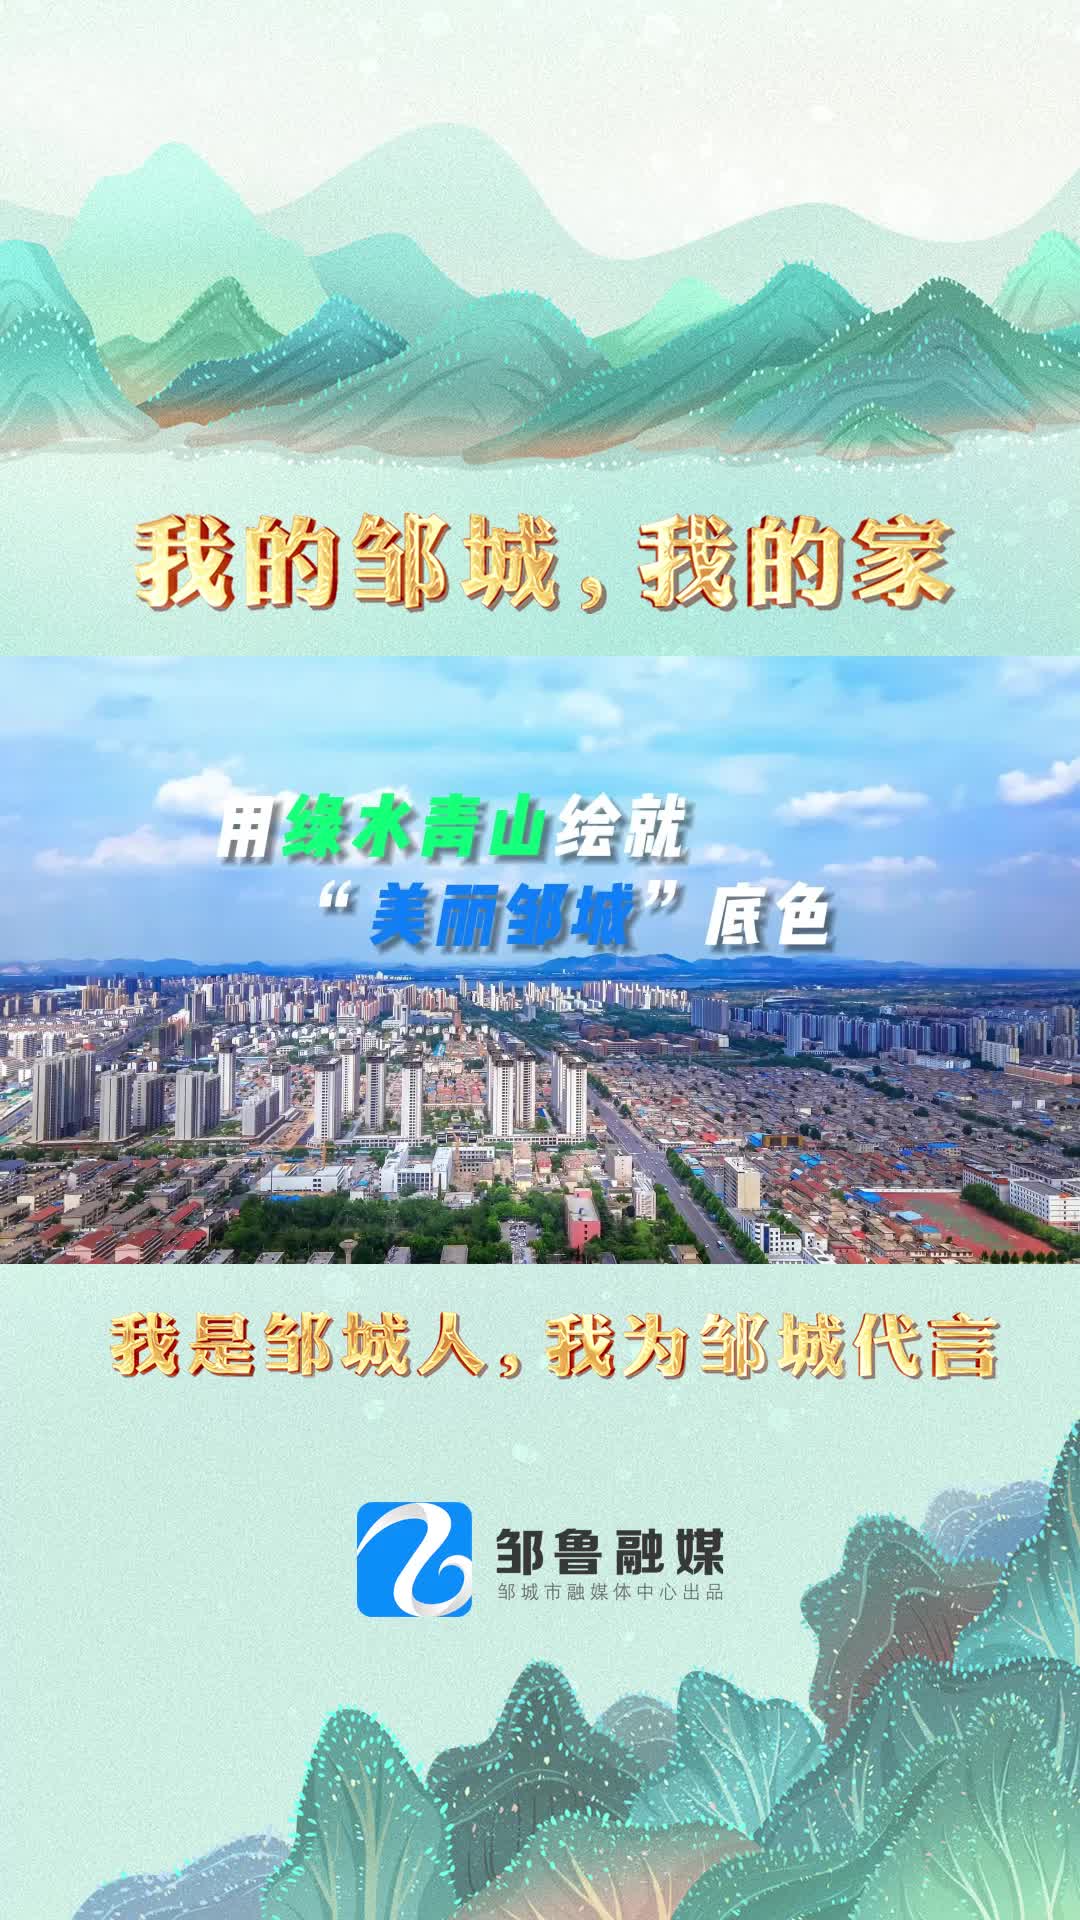 【邹视频·新闻】120秒|用绿水青山绘就“美丽邹城”底色